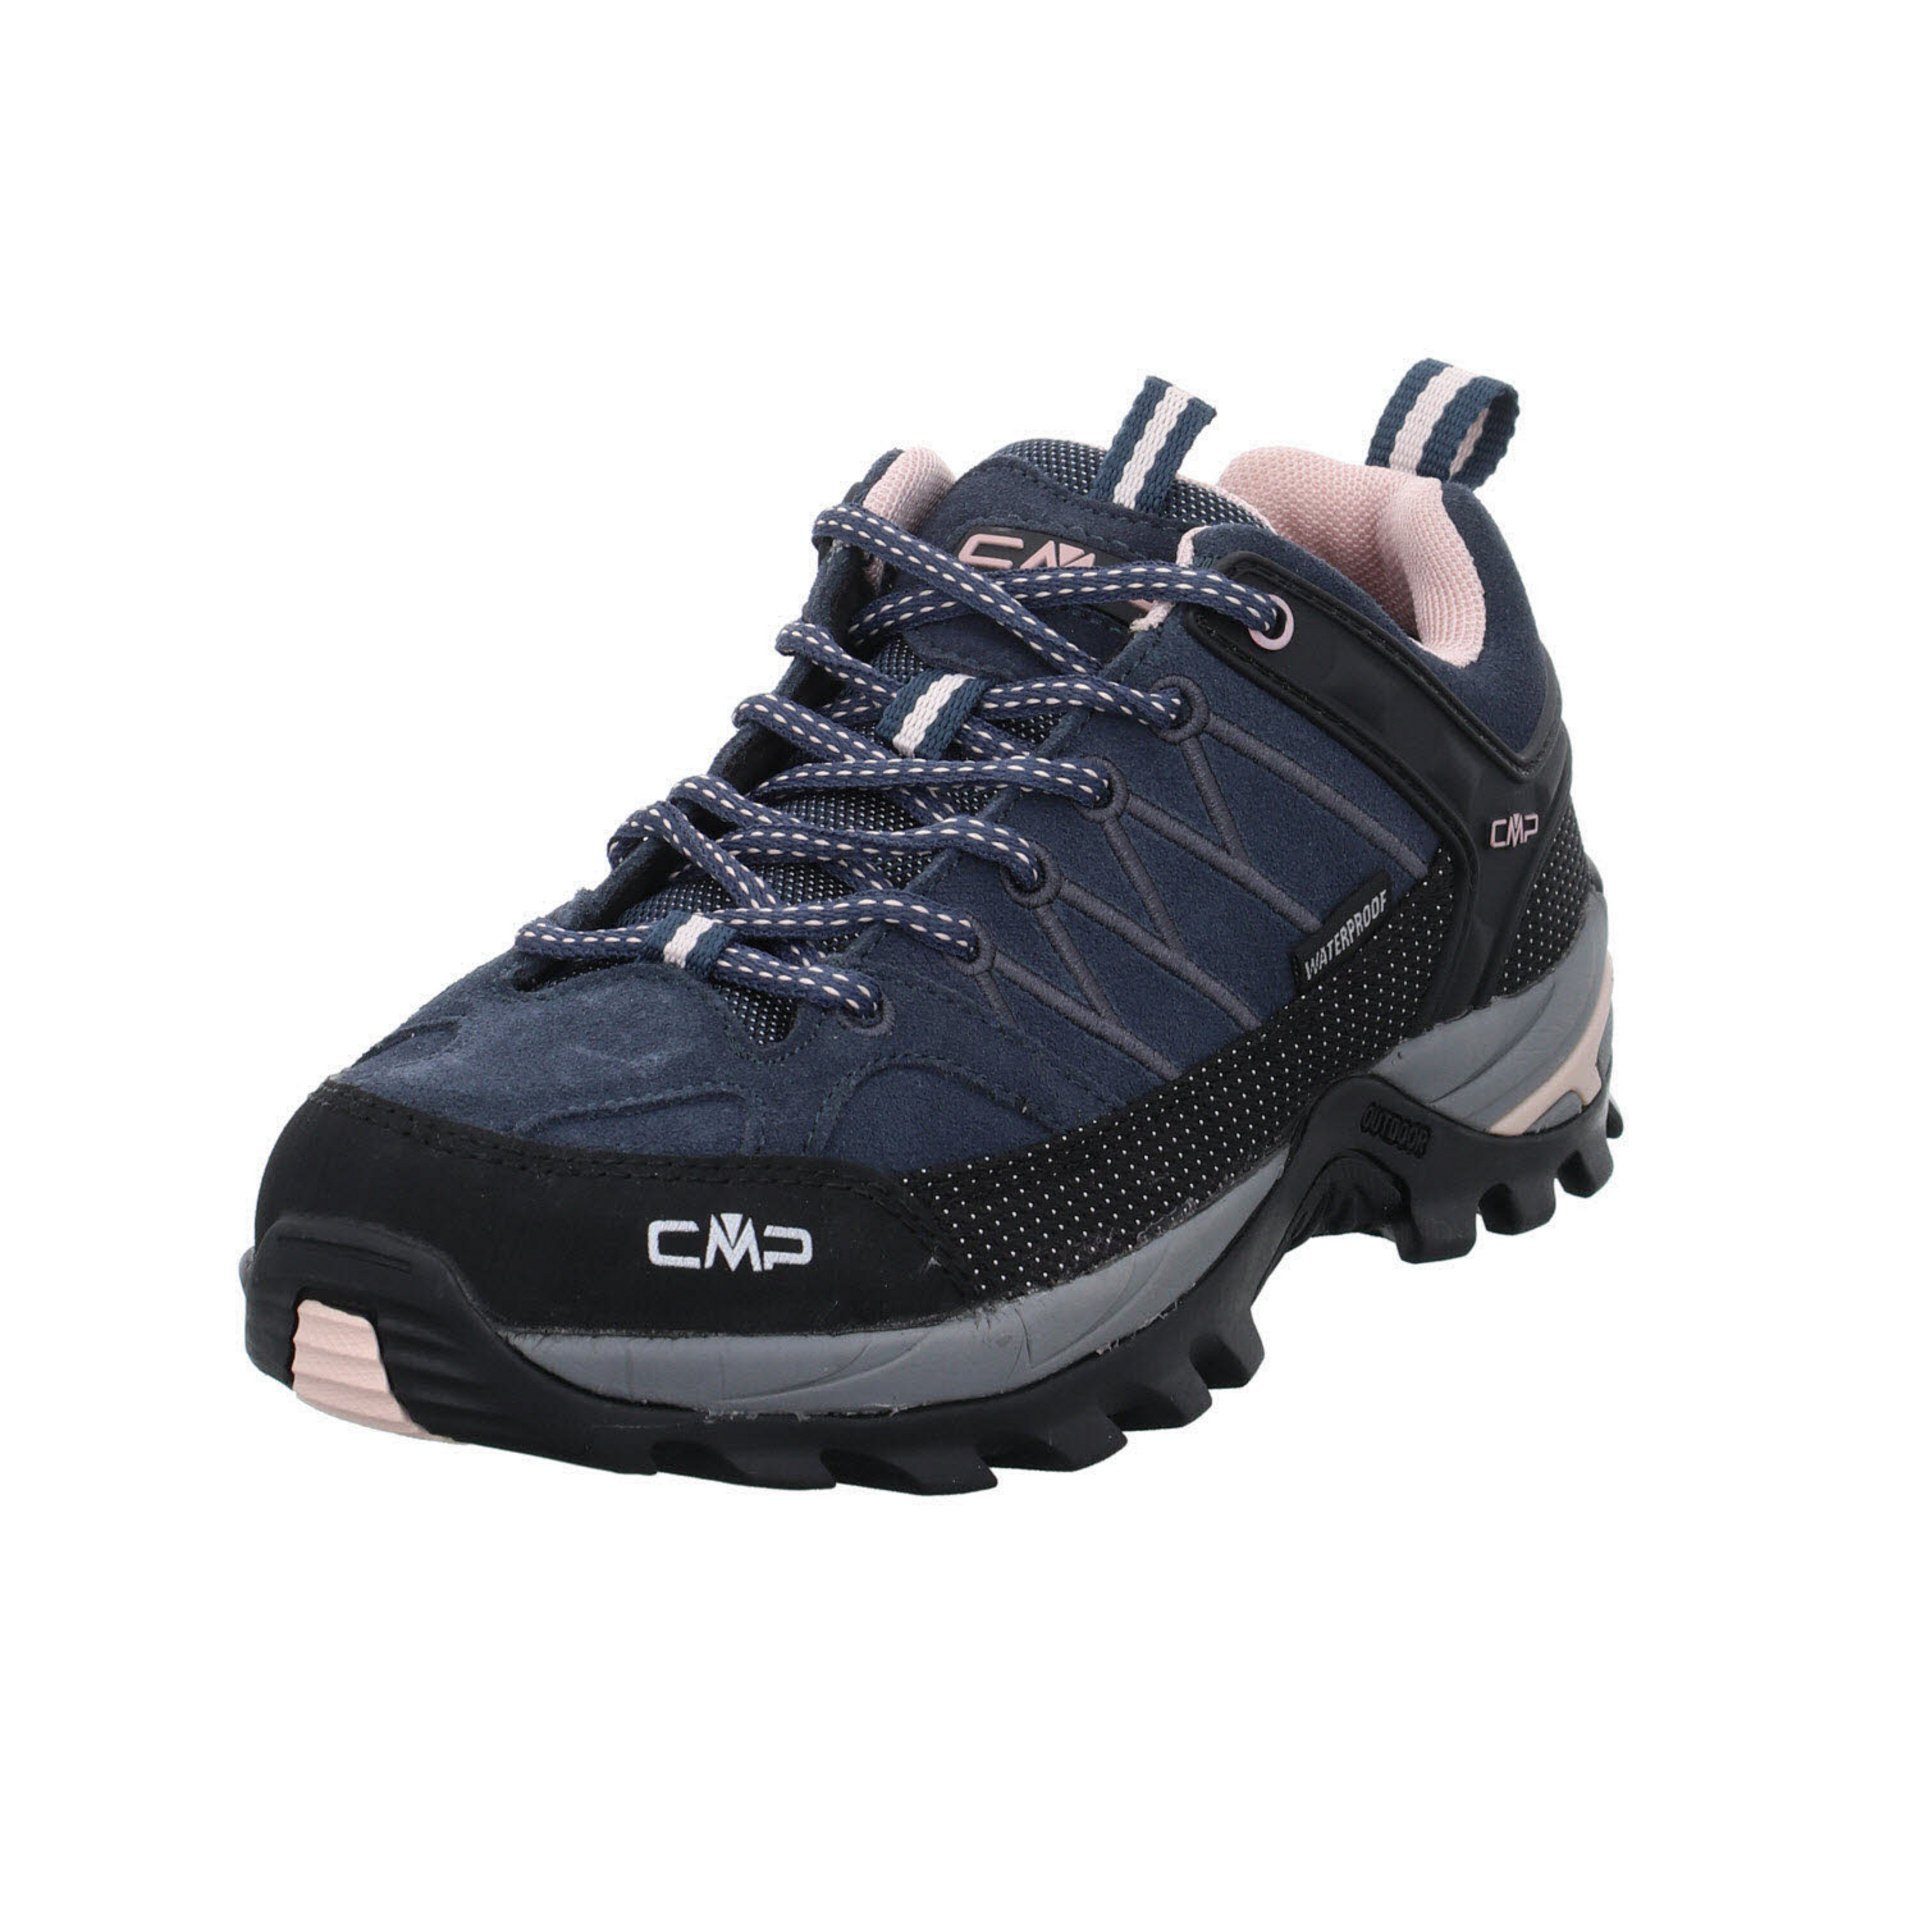 Schuhe Riegel Damen Outdoorschuh Outdoorschuh CMP Outdoor Low asphalt-antracite-rose Leder-/Textilkombination